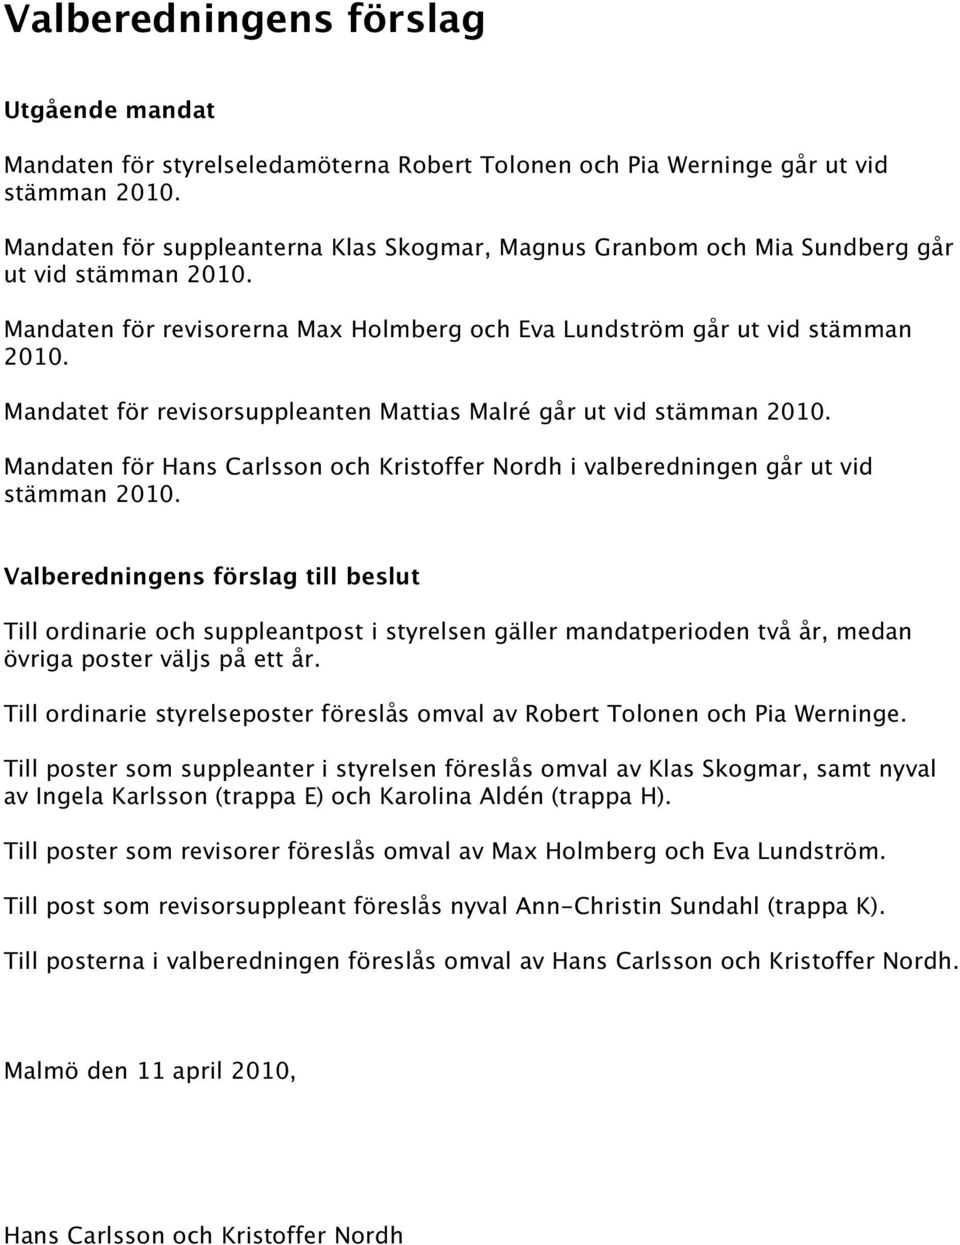 Mandatet för revisorsuppleanten Mattias Malré går ut vid stämman 2010. Mandaten för Hans Carlsson och Kristoffer Nordh i valberedningen går ut vid stämman 2010.